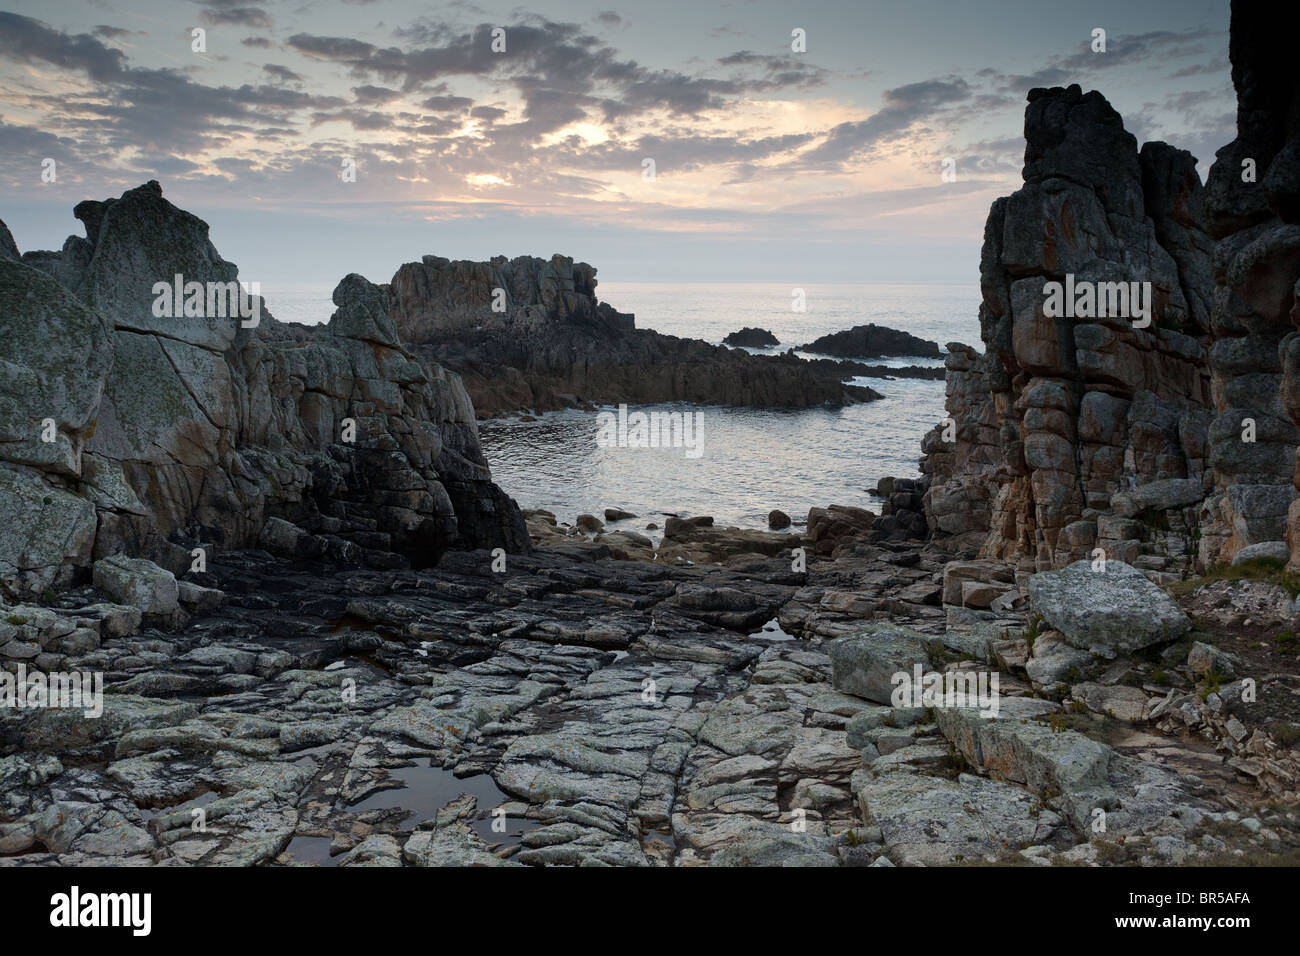 Côte rocheuse de l'île d'Ouessant, au crépuscule, en Bretagne, Finistère, France Banque D'Images